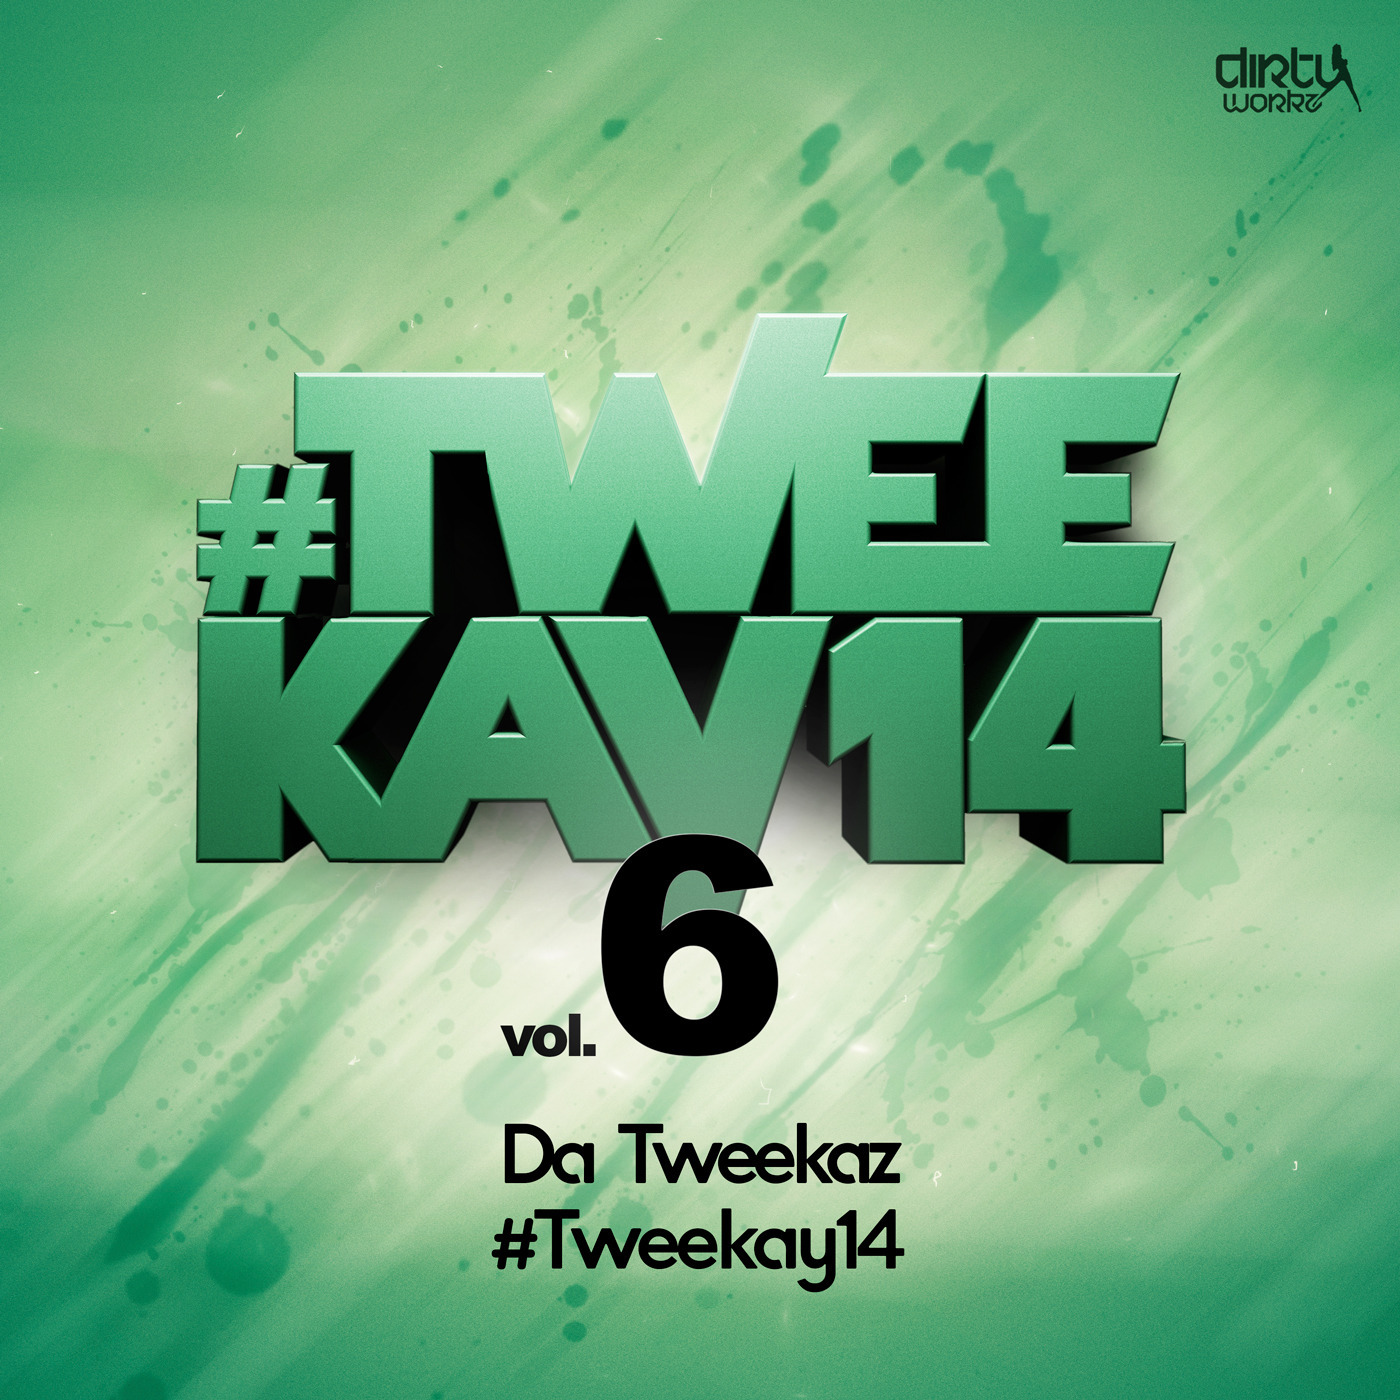 Da Tweekaz - #Tweekay14 [DIRTY WORKZ] DWX171